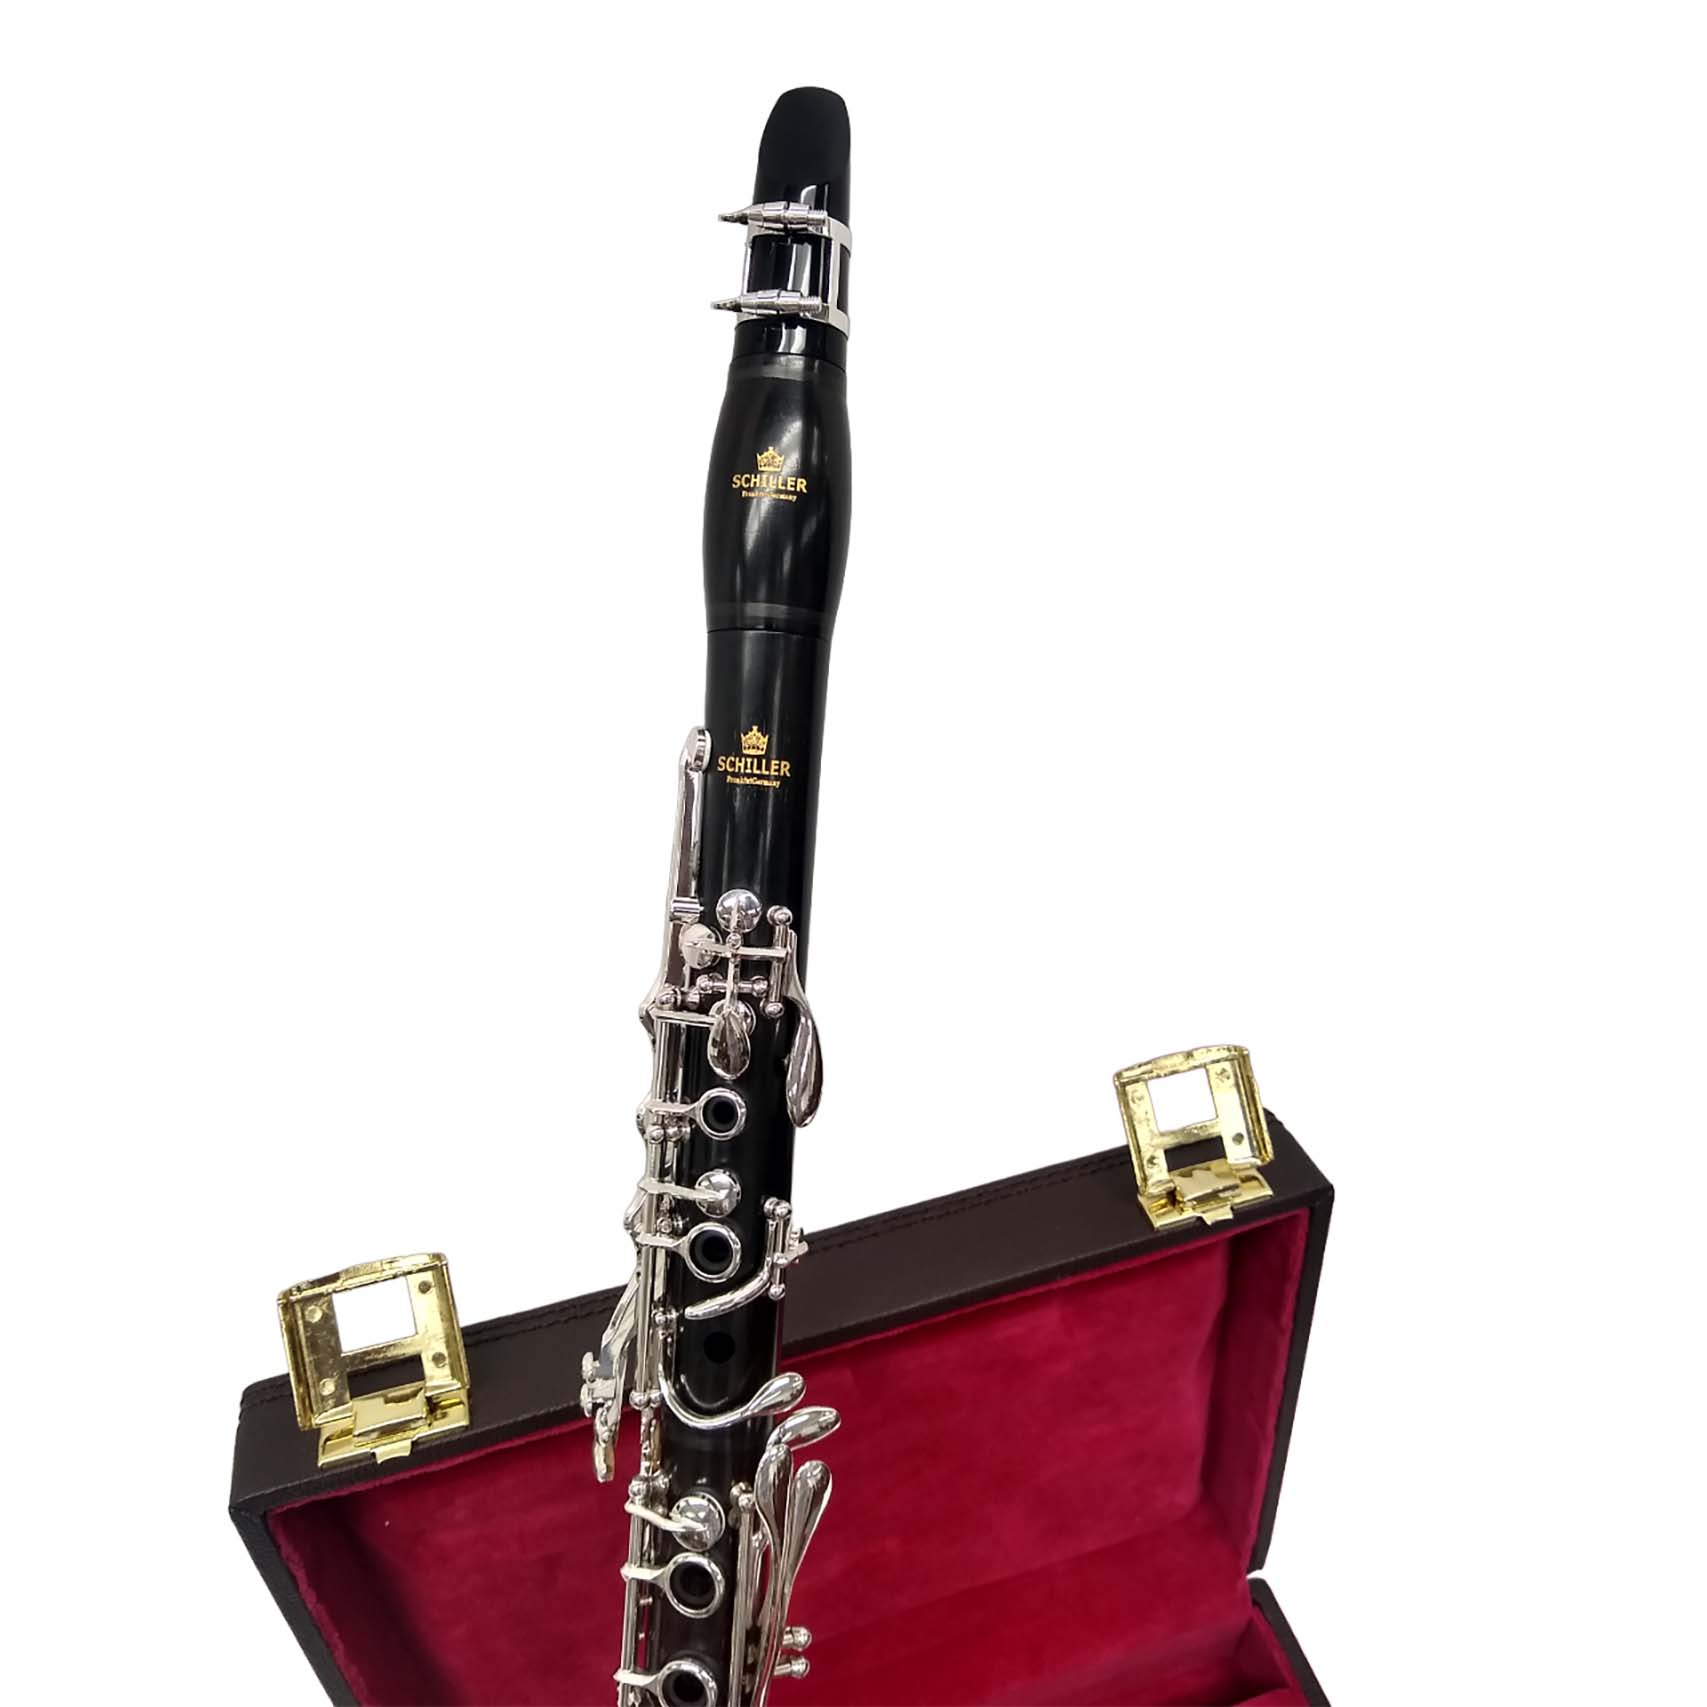 Schiller Centertone Stealth Clarinet